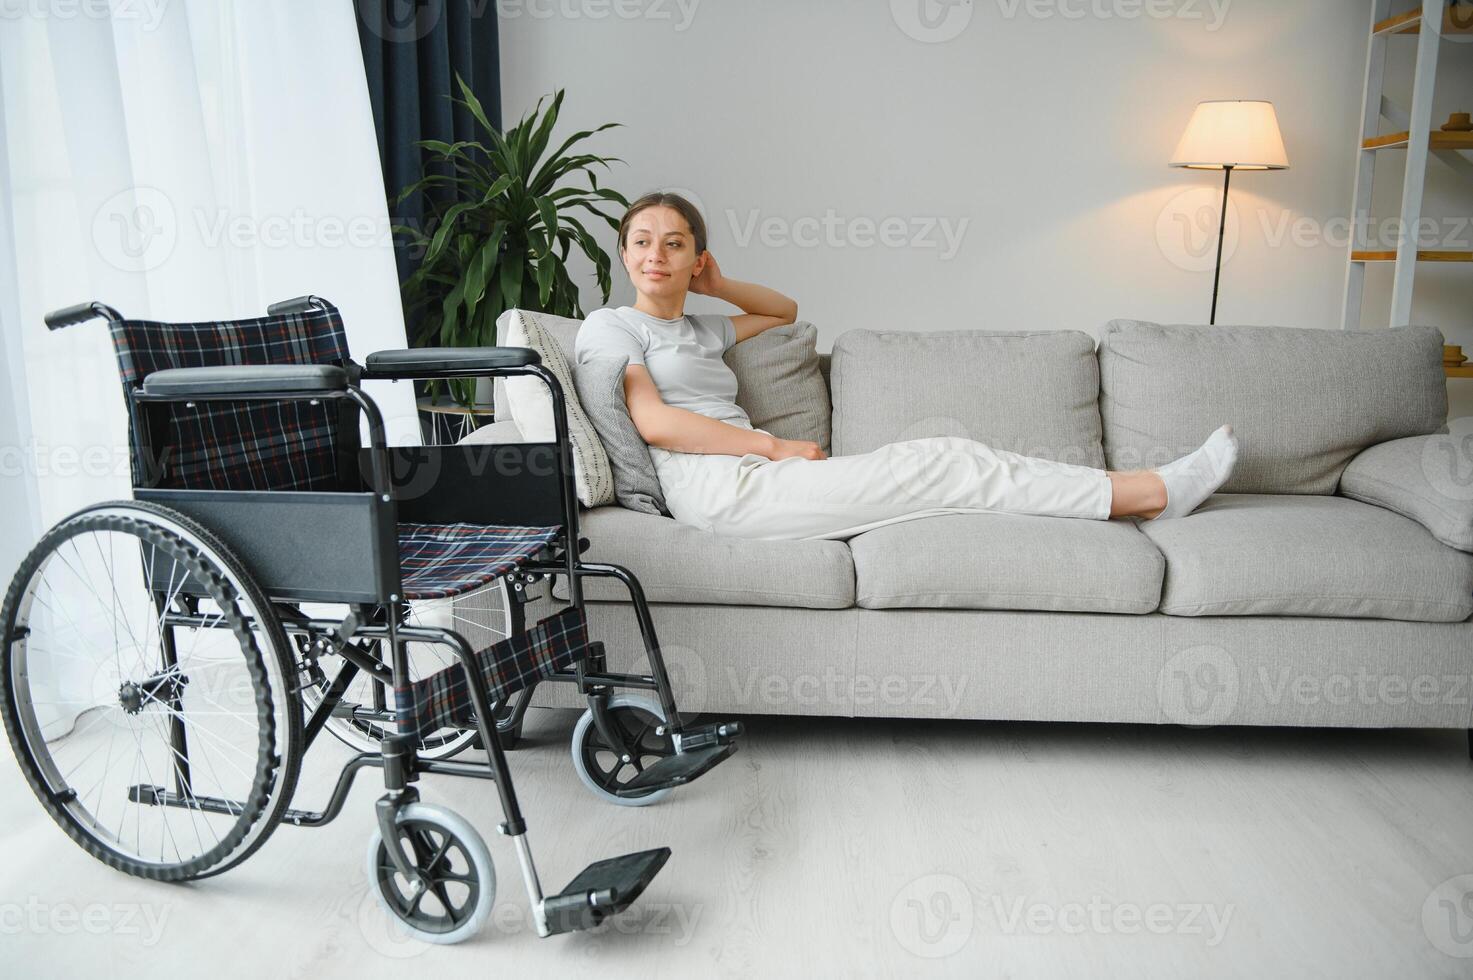 vrouw proberen naar zitten naar beneden in rolstoel van bankstel foto